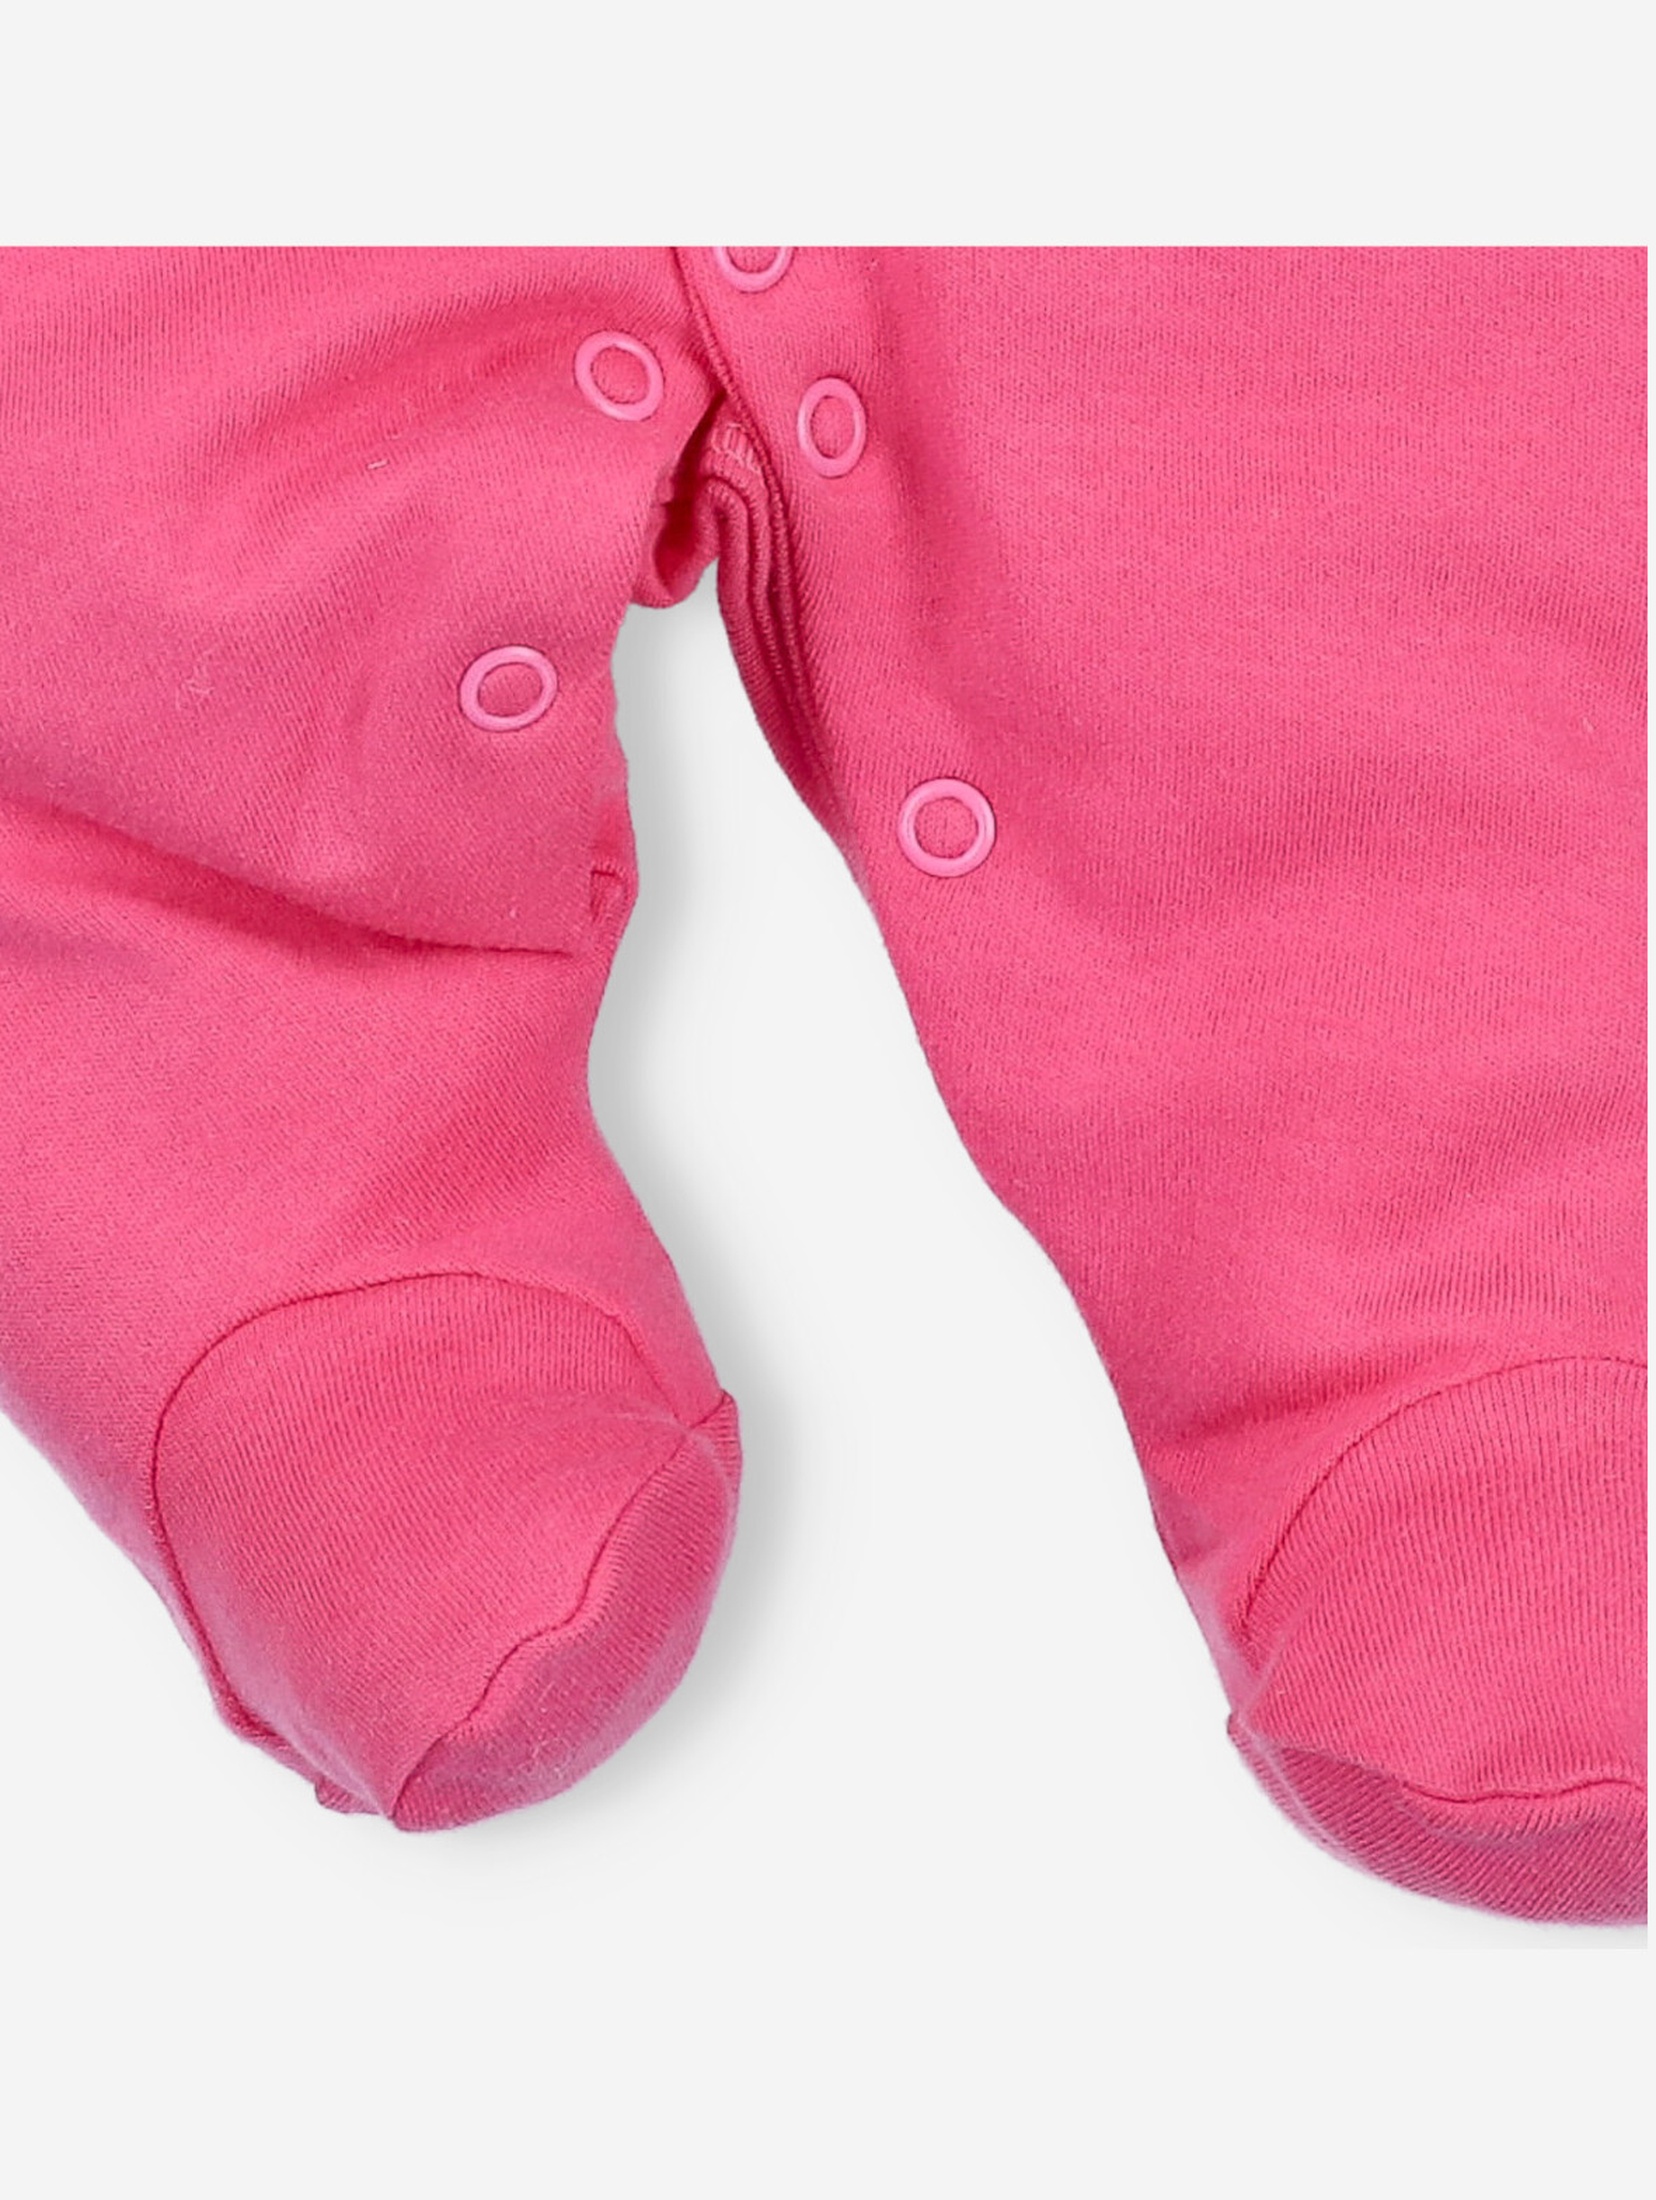 Pajac niemowlęcy z bawełny organicznej dla dziewczynki w kolorze malinowym